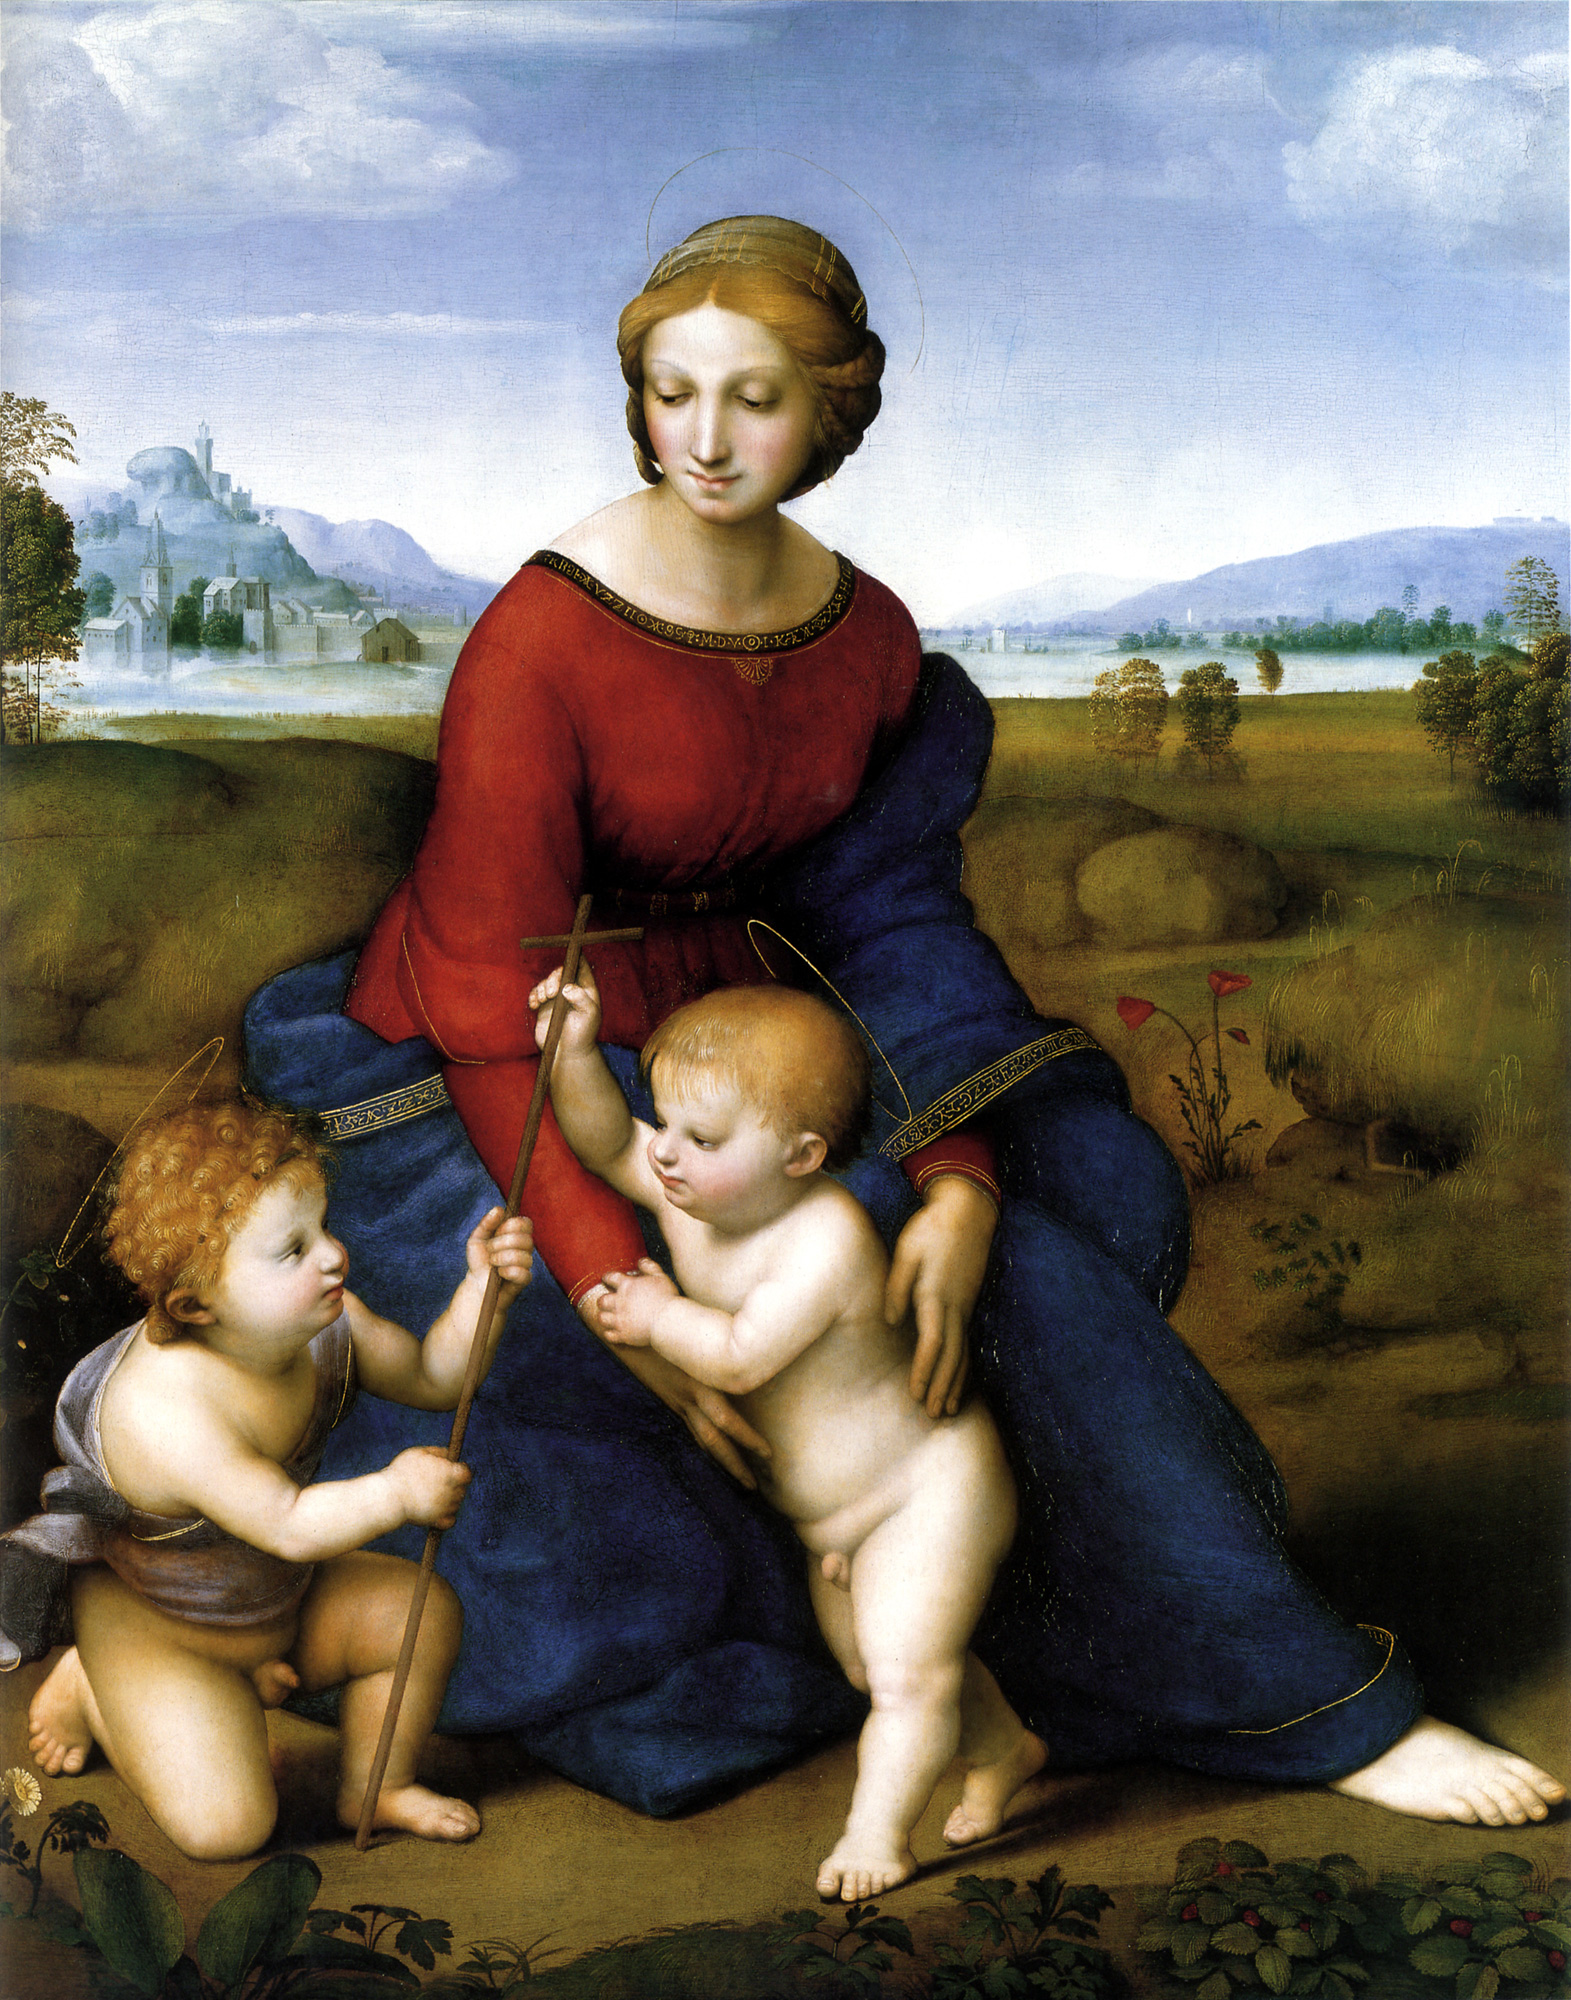 Raffaello Santi, Madonna im Grünen, 1505 oder 1506, Wien, Kunsthistorisches Museum. Quelle: Wikipedia.